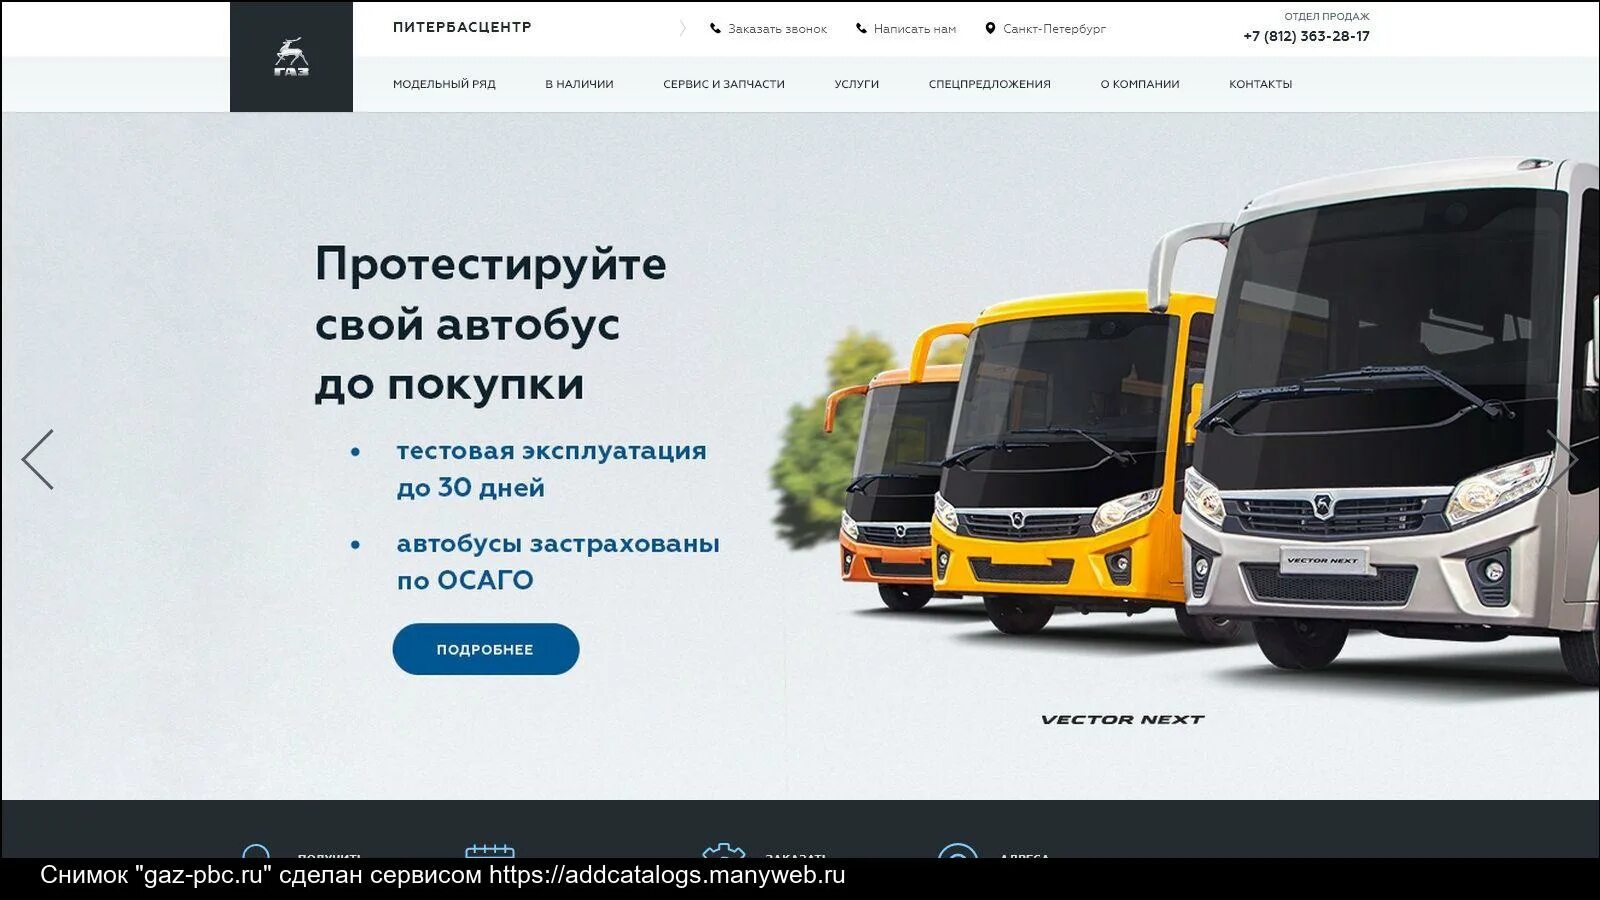 Автобусы из центра в городе. Автобус вектор. Дилеры ПАЗ. Автобусы у дилера. Русские автобусы.